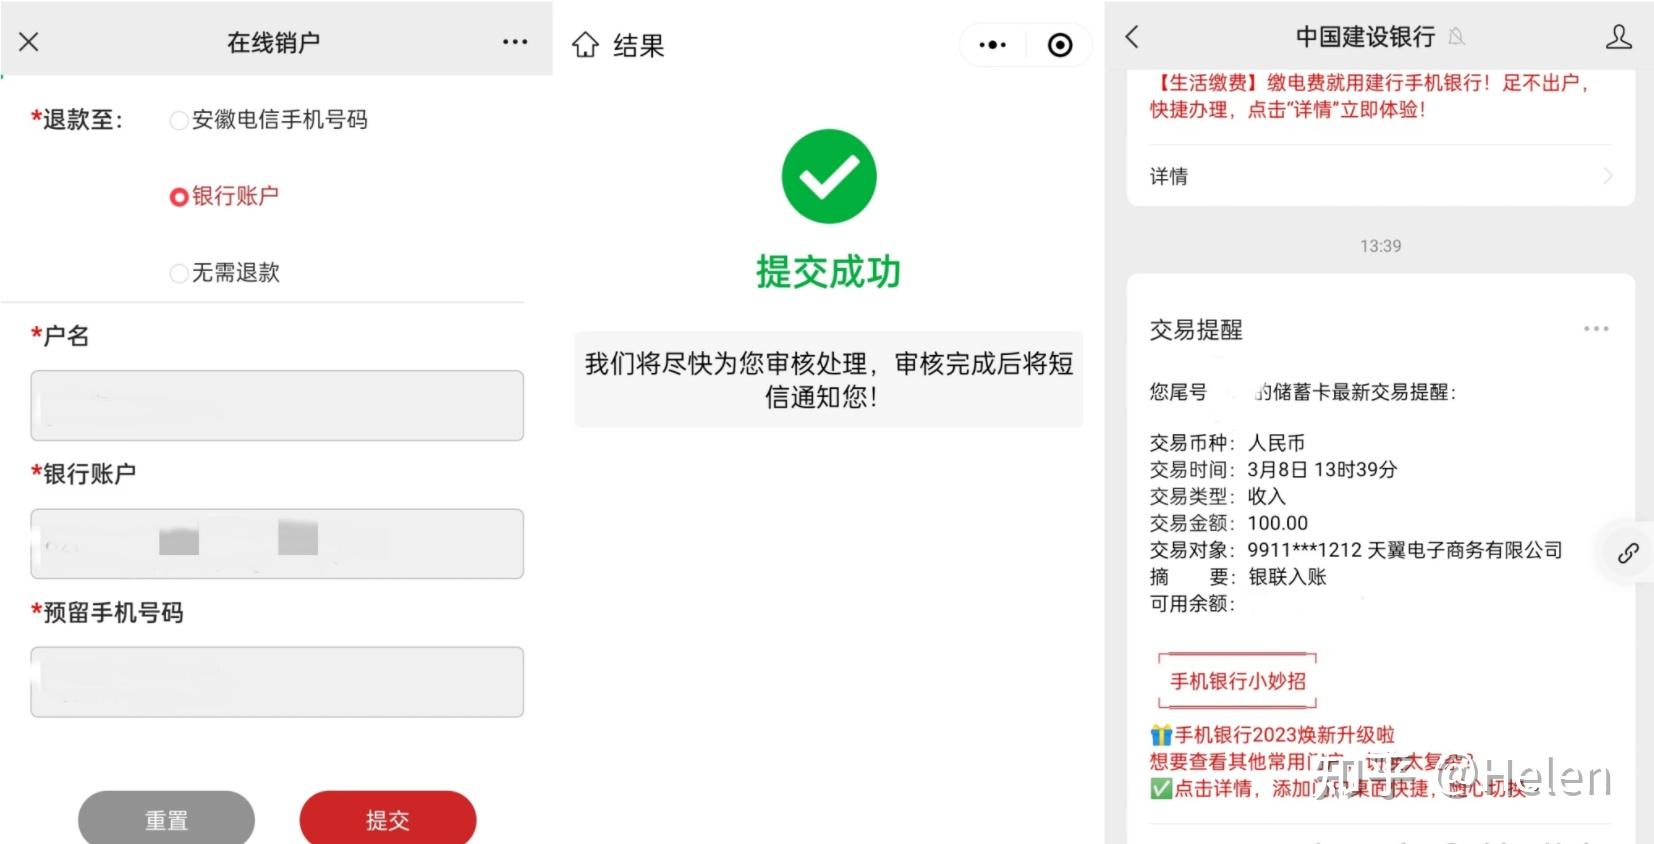 中国移动免费手机_免费手机卡中国移动_有没有免费手机卡移动